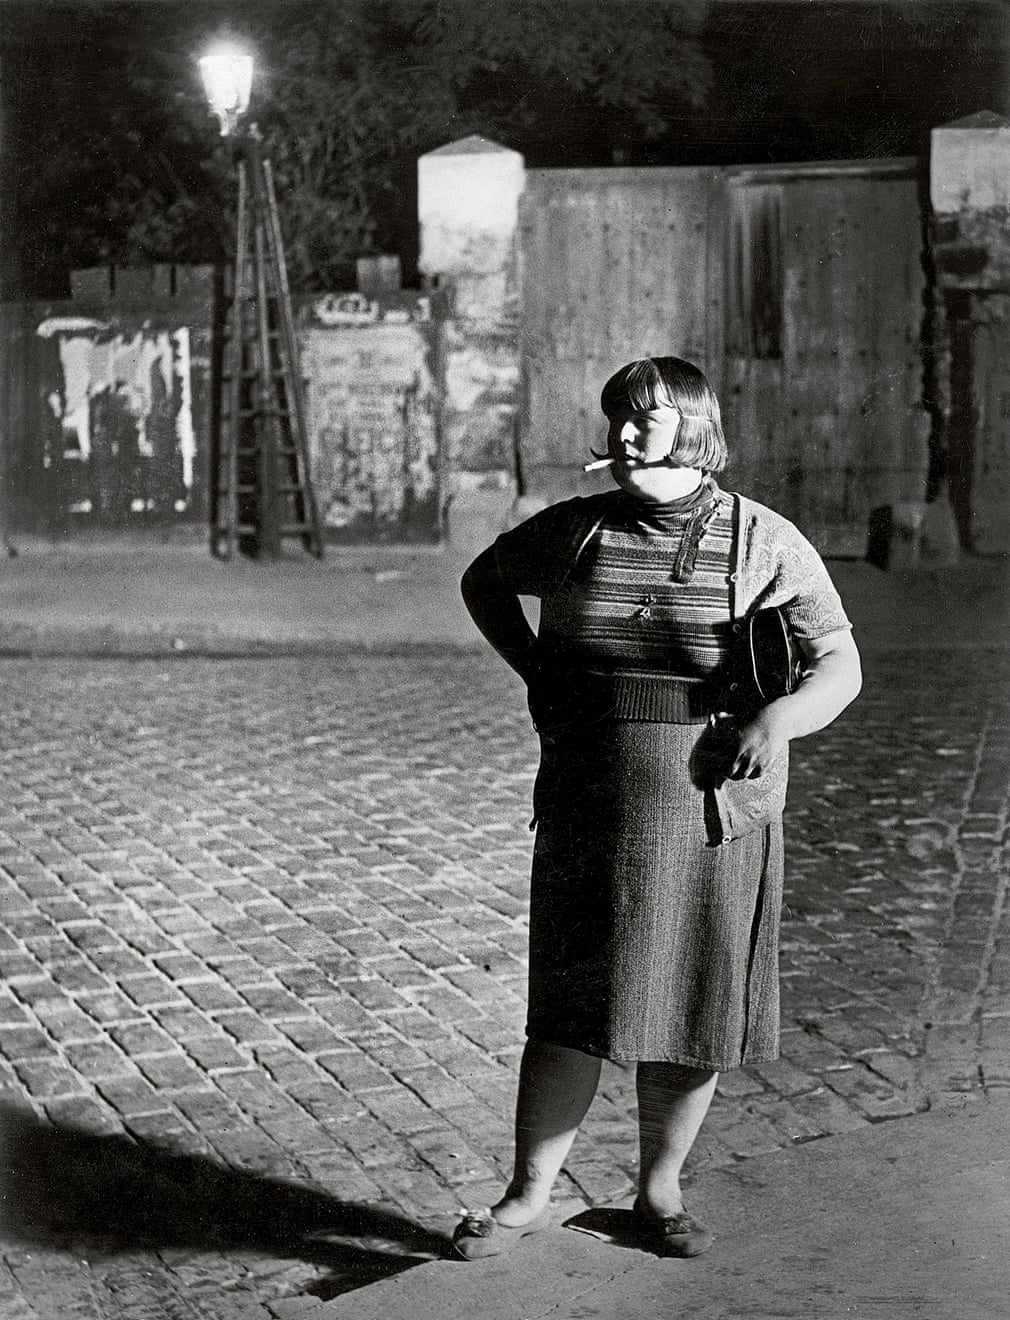 Streetwalker near Place d’Italie, 1932